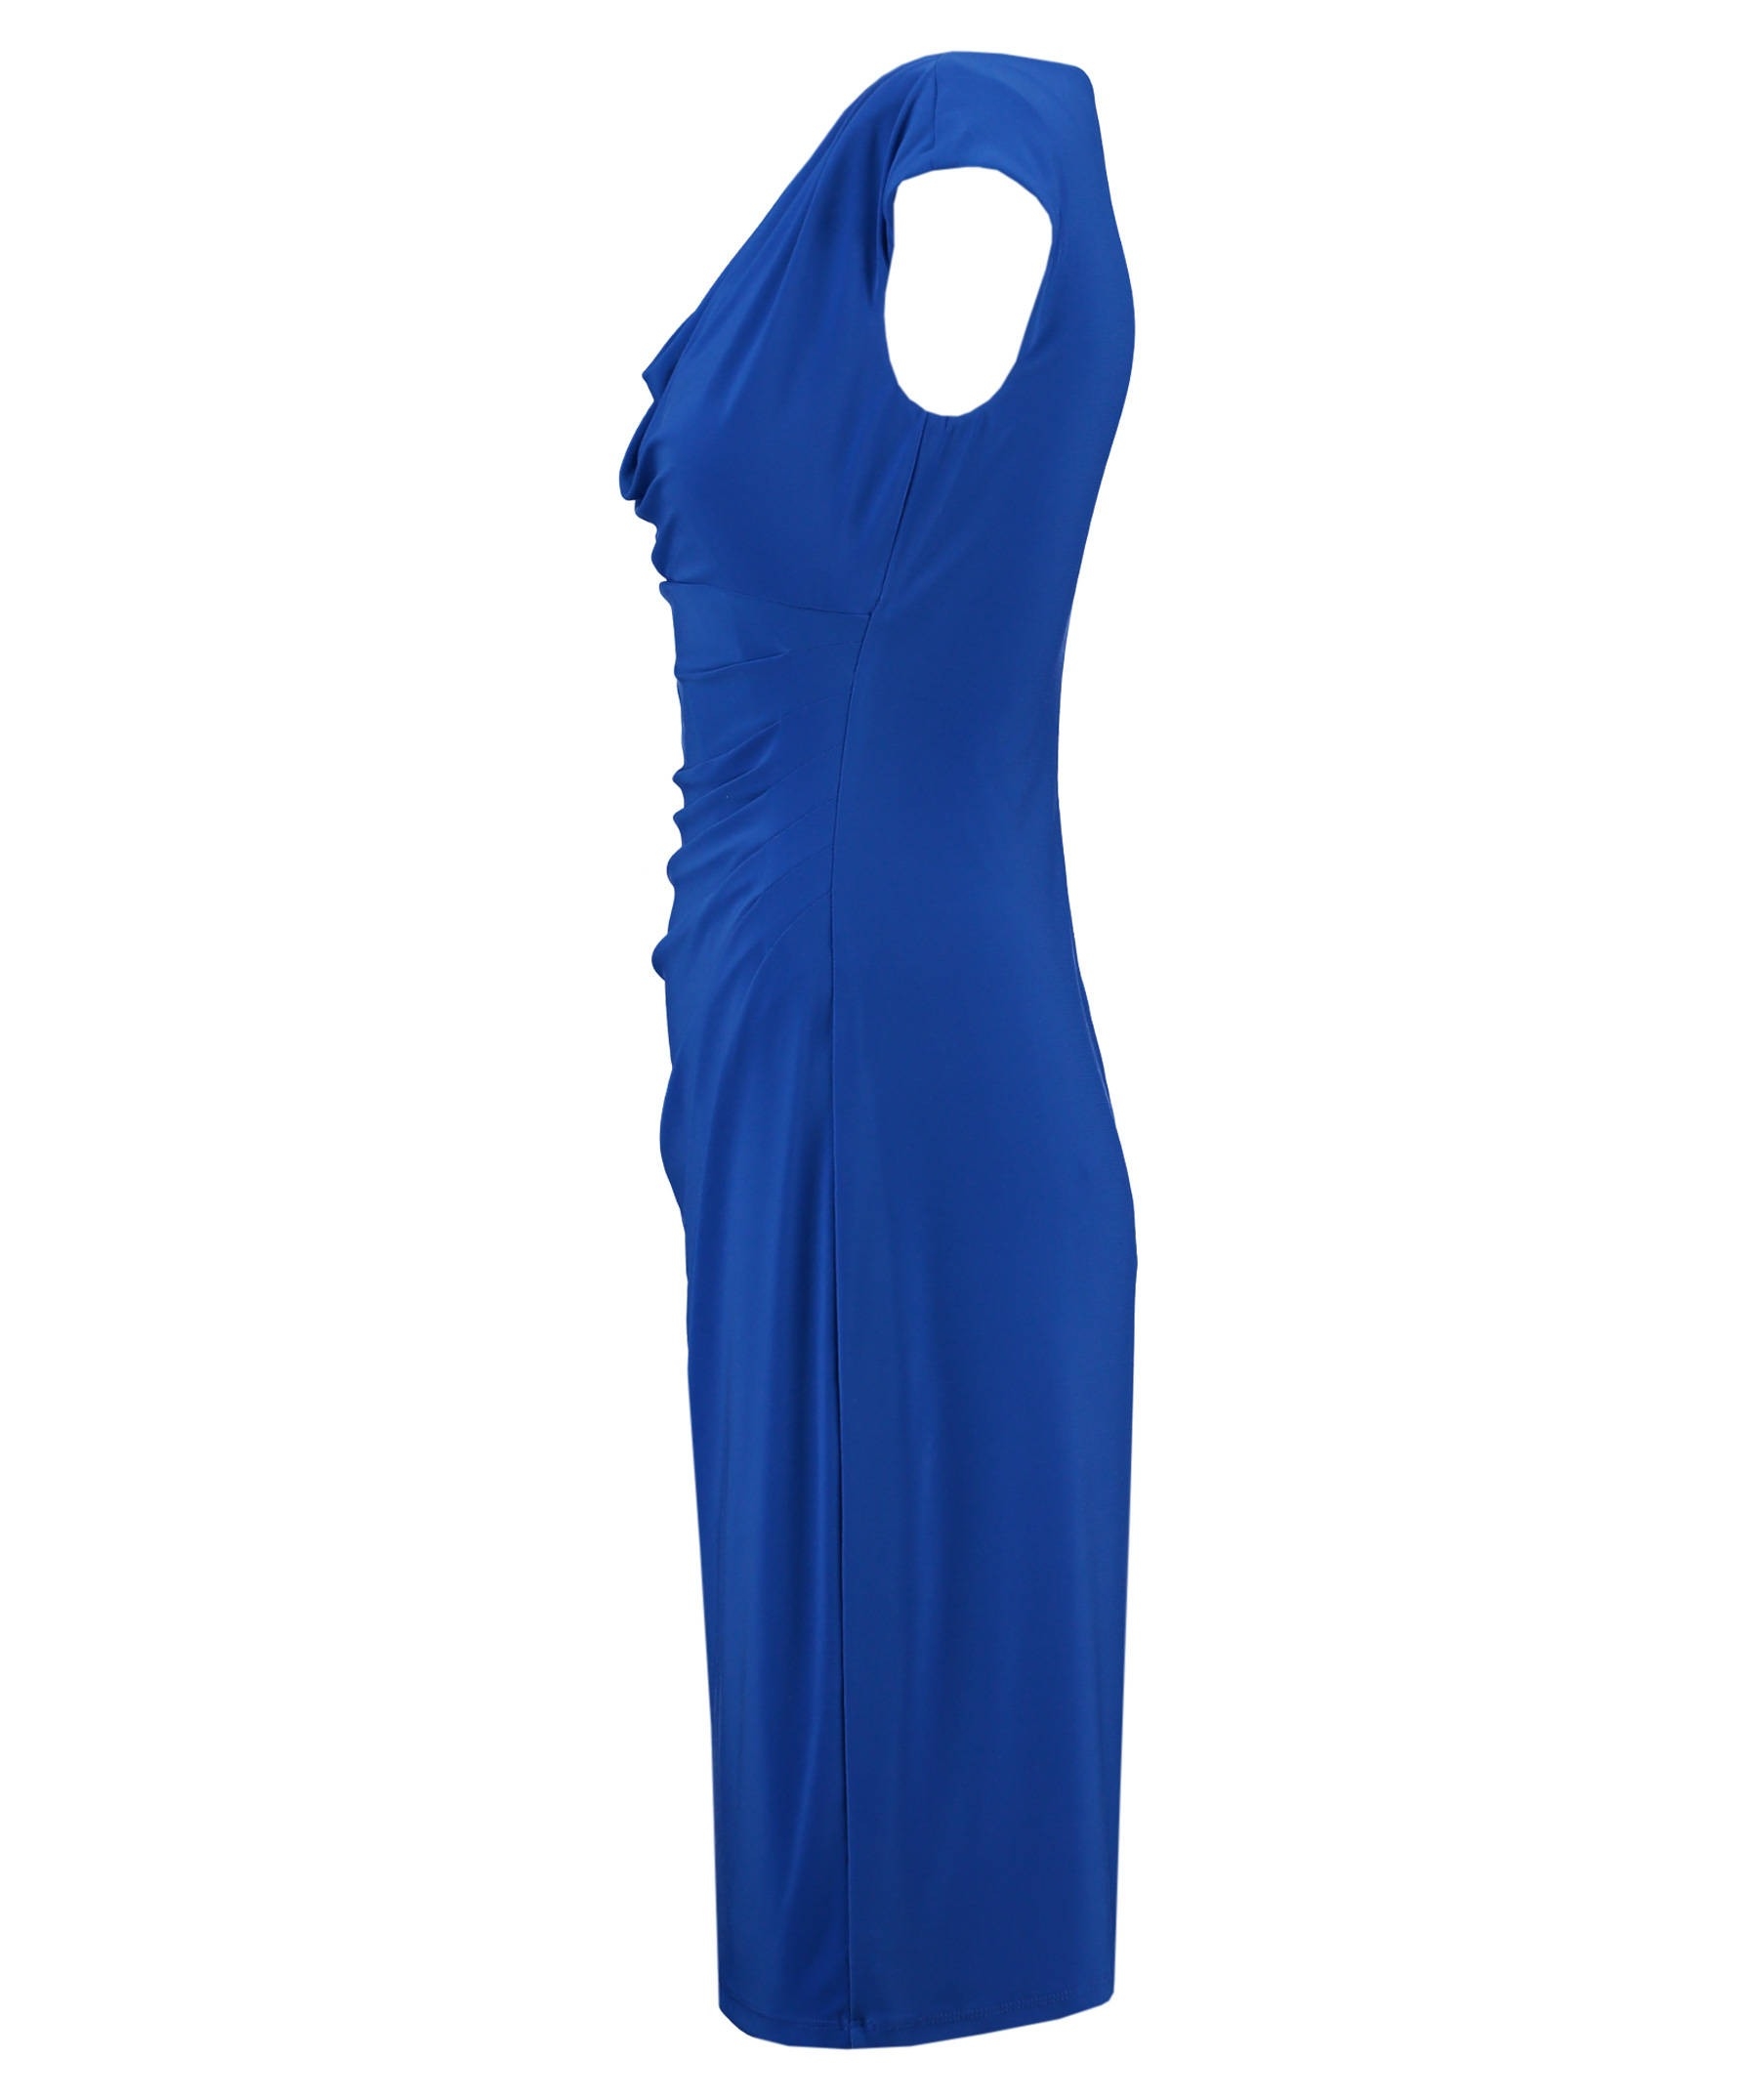 Formal Genial Damen Kleid Blau Vertrieb17 Elegant Damen Kleid Blau Stylish